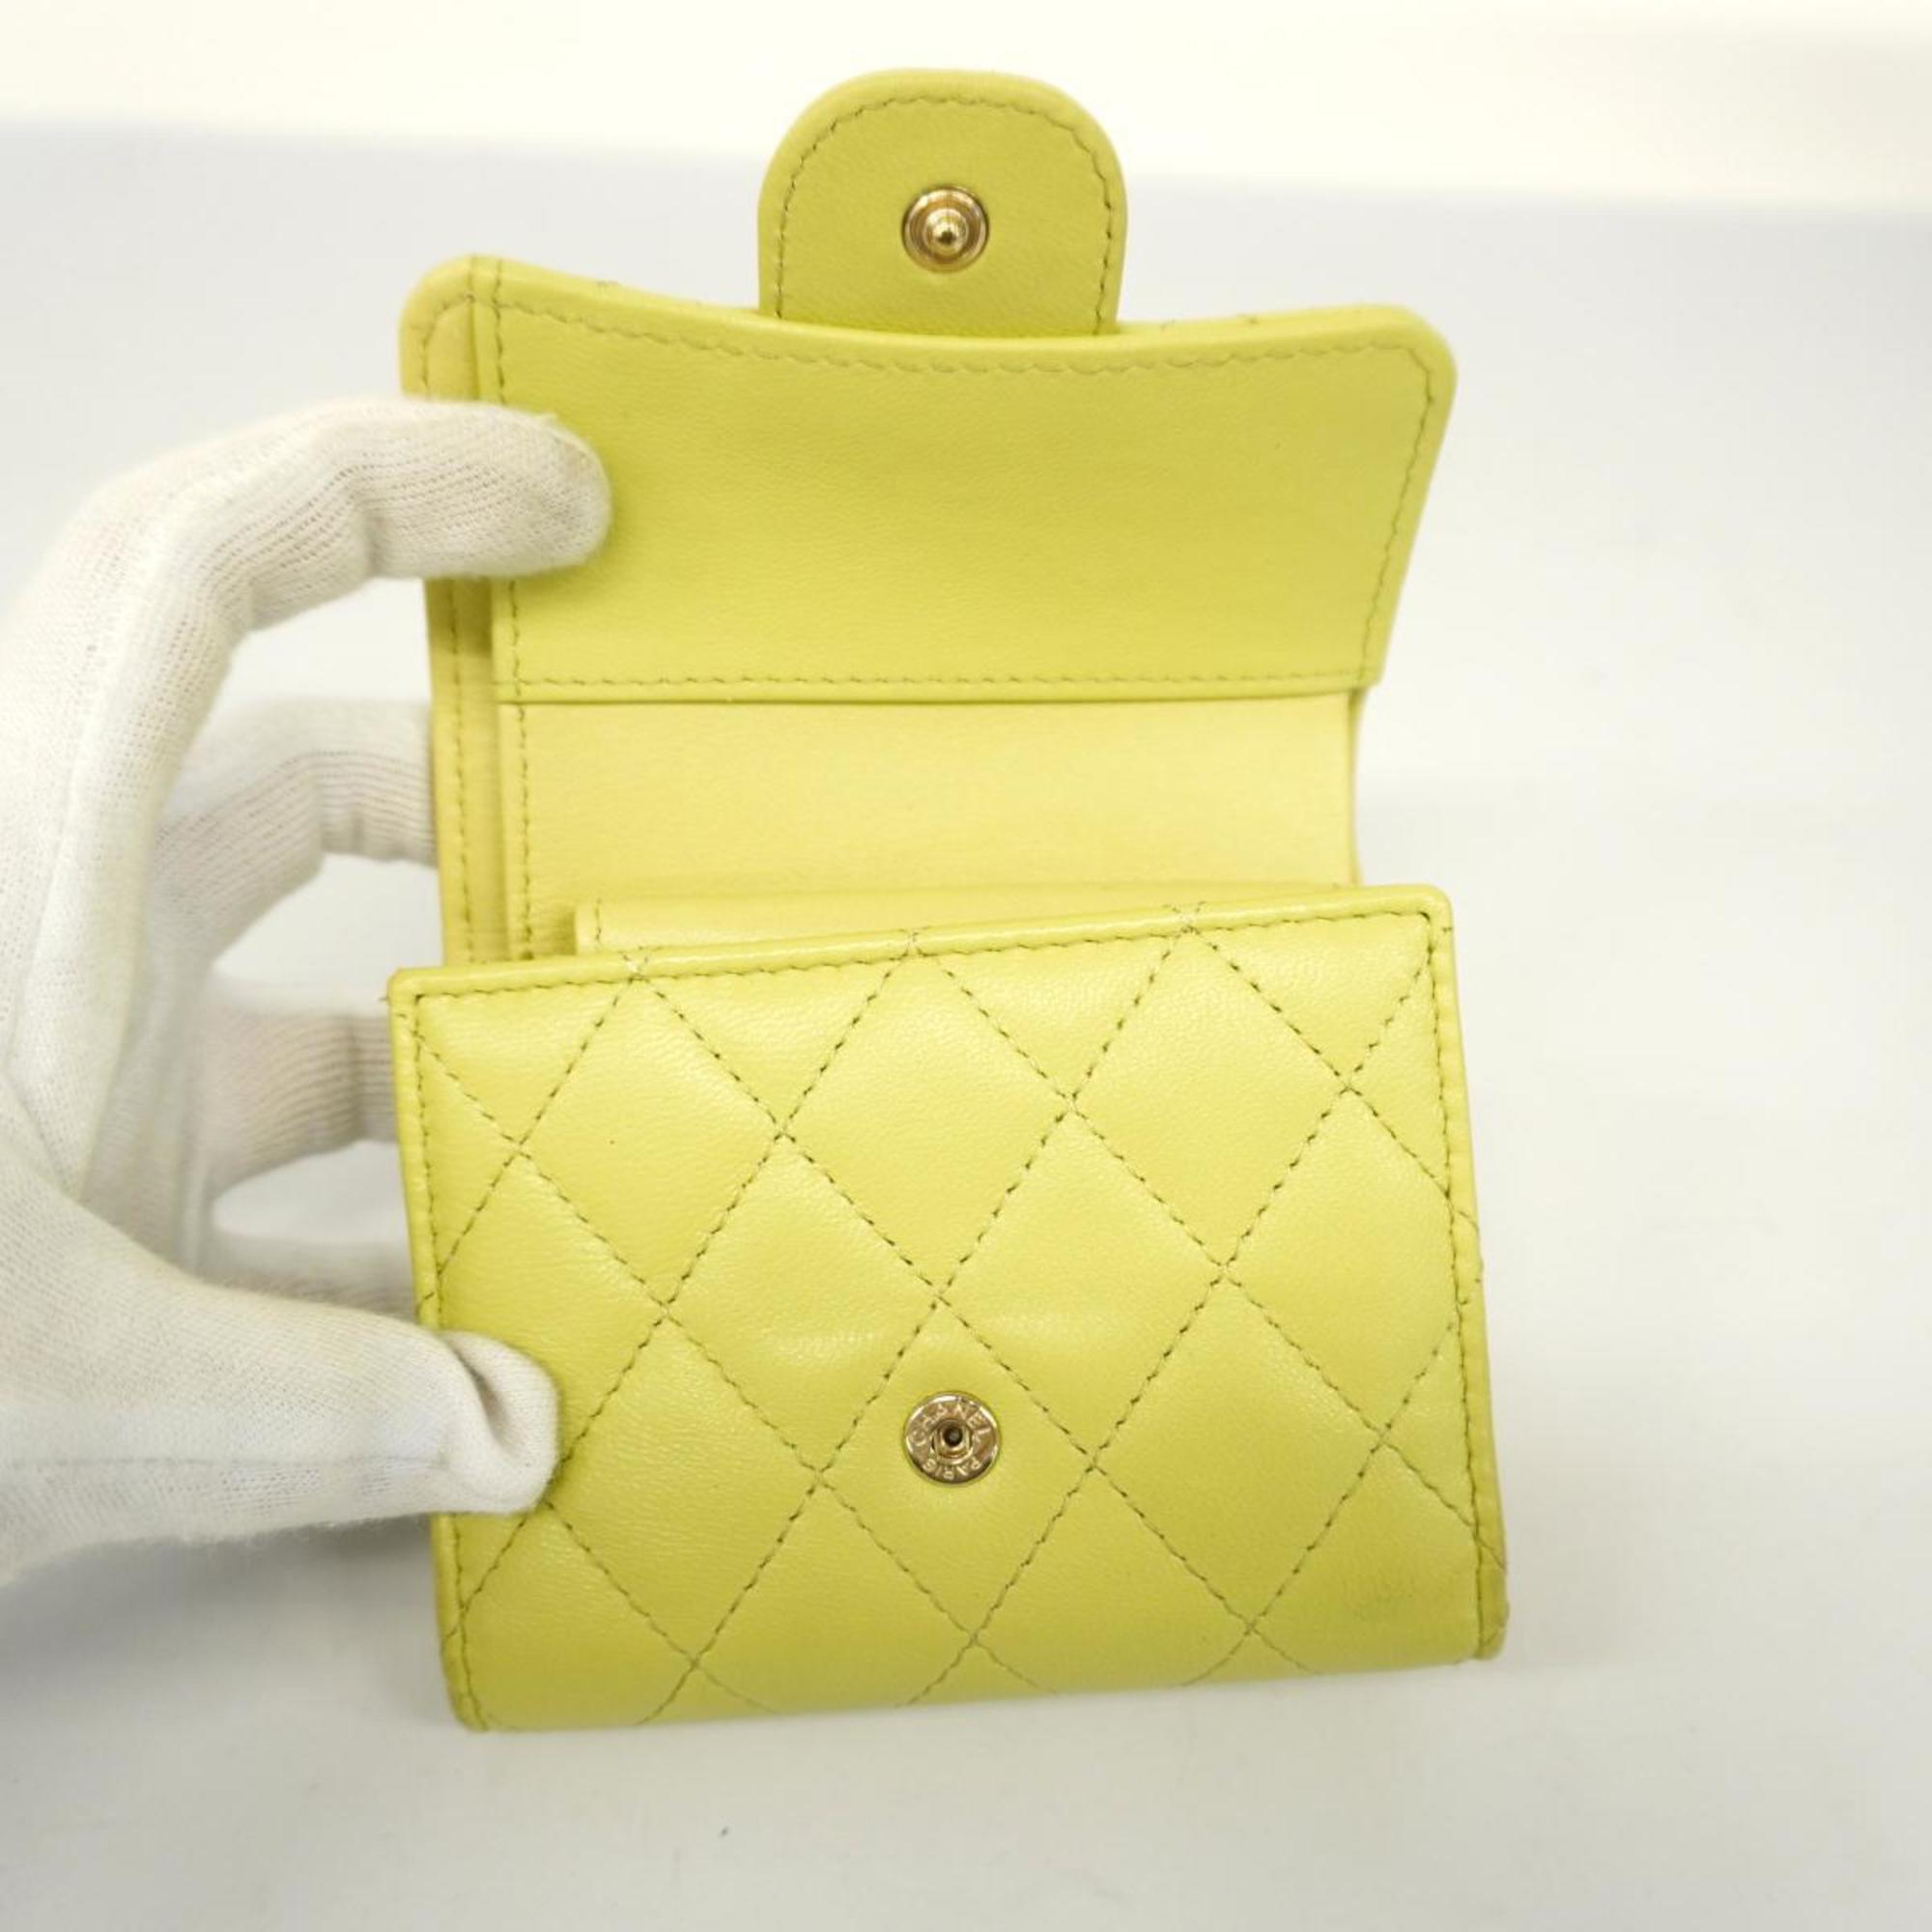 シャネル(Chanel) シャネル 三つ折り財布 マトラッセ ラムスキン グリーン シャンパン  レディース